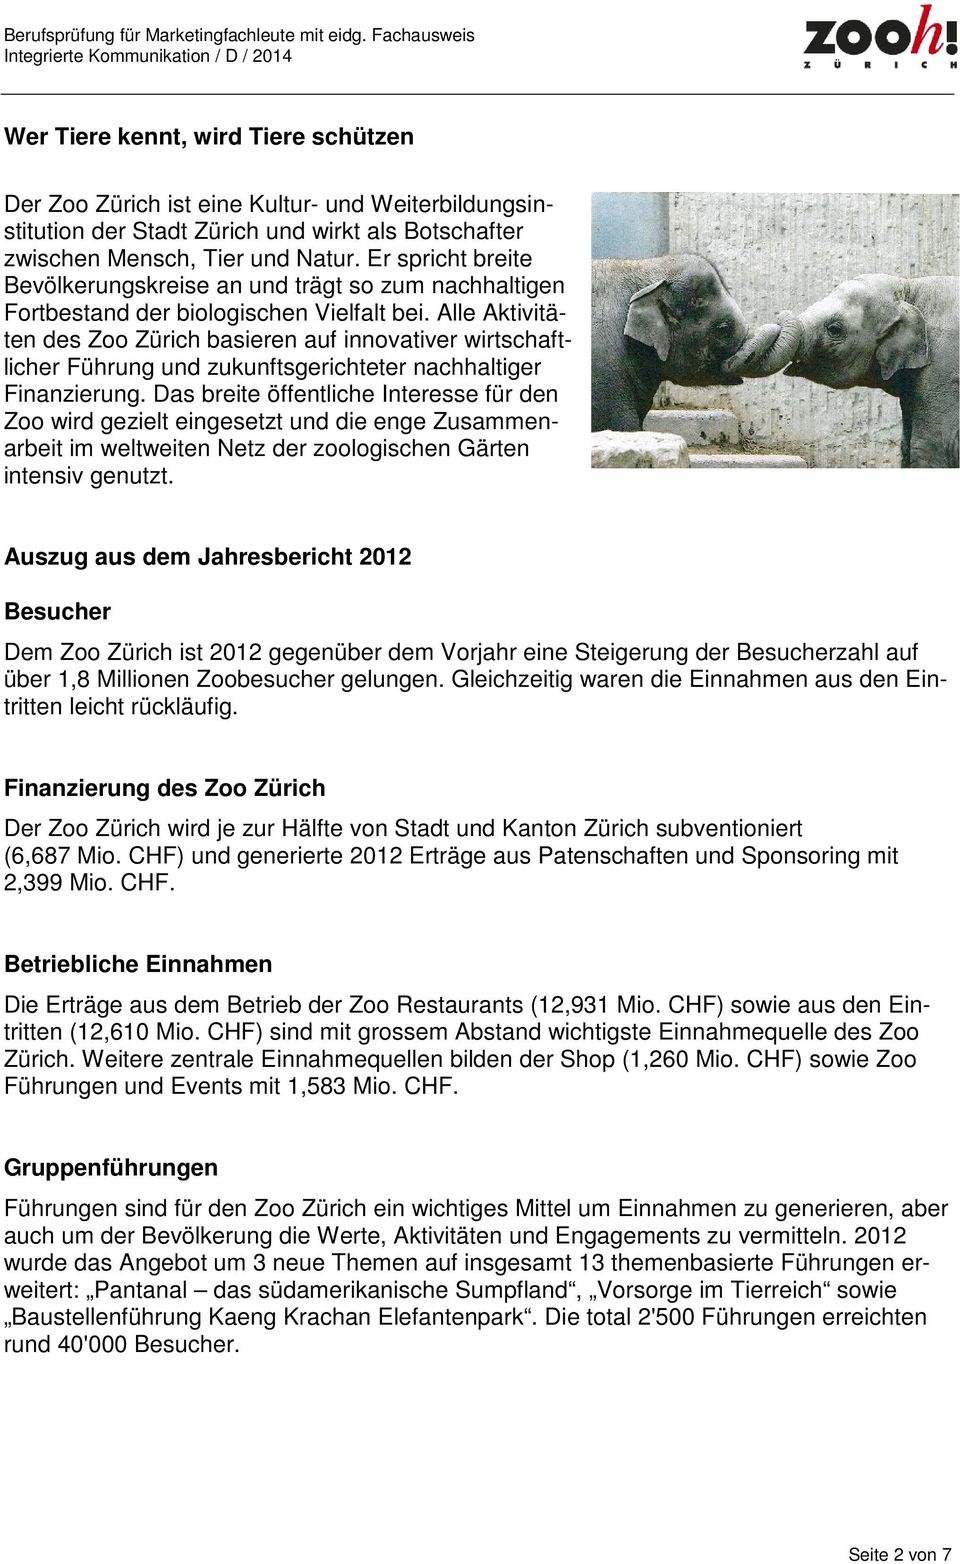 Alle Aktivitäten des Zoo Zürich basieren auf innovativer wirtschaftlicher Führung und zukunftsgerichteter nachhaltiger Finanzierung.